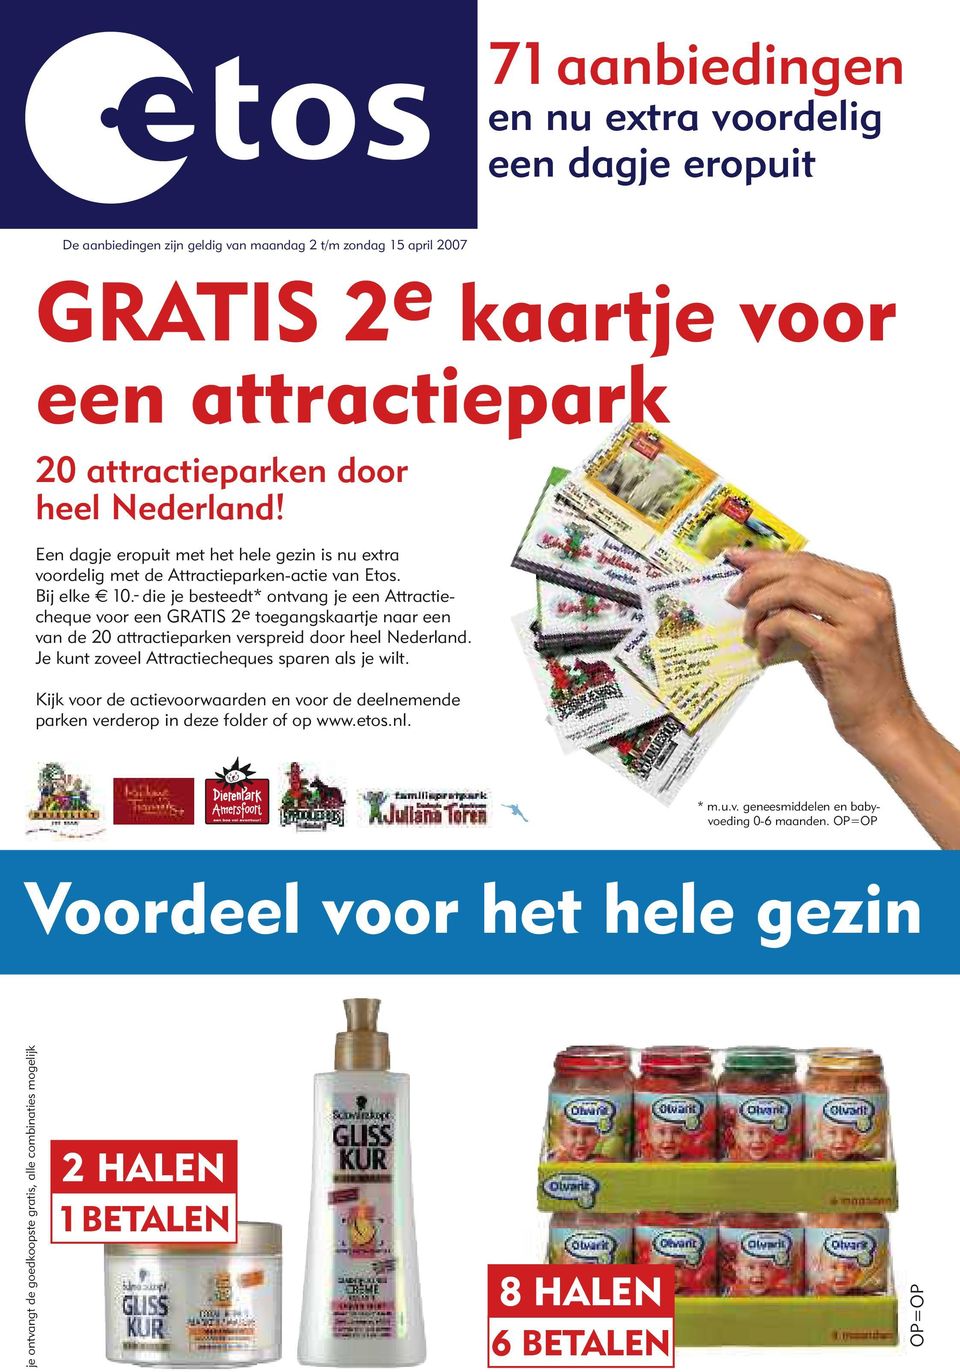 - die je besteedt* ontvang je een Attractiecheque voor een GRATIS 2e toegangskaartje naar een van de 20 attractieparken verspreid door heel Nederland.